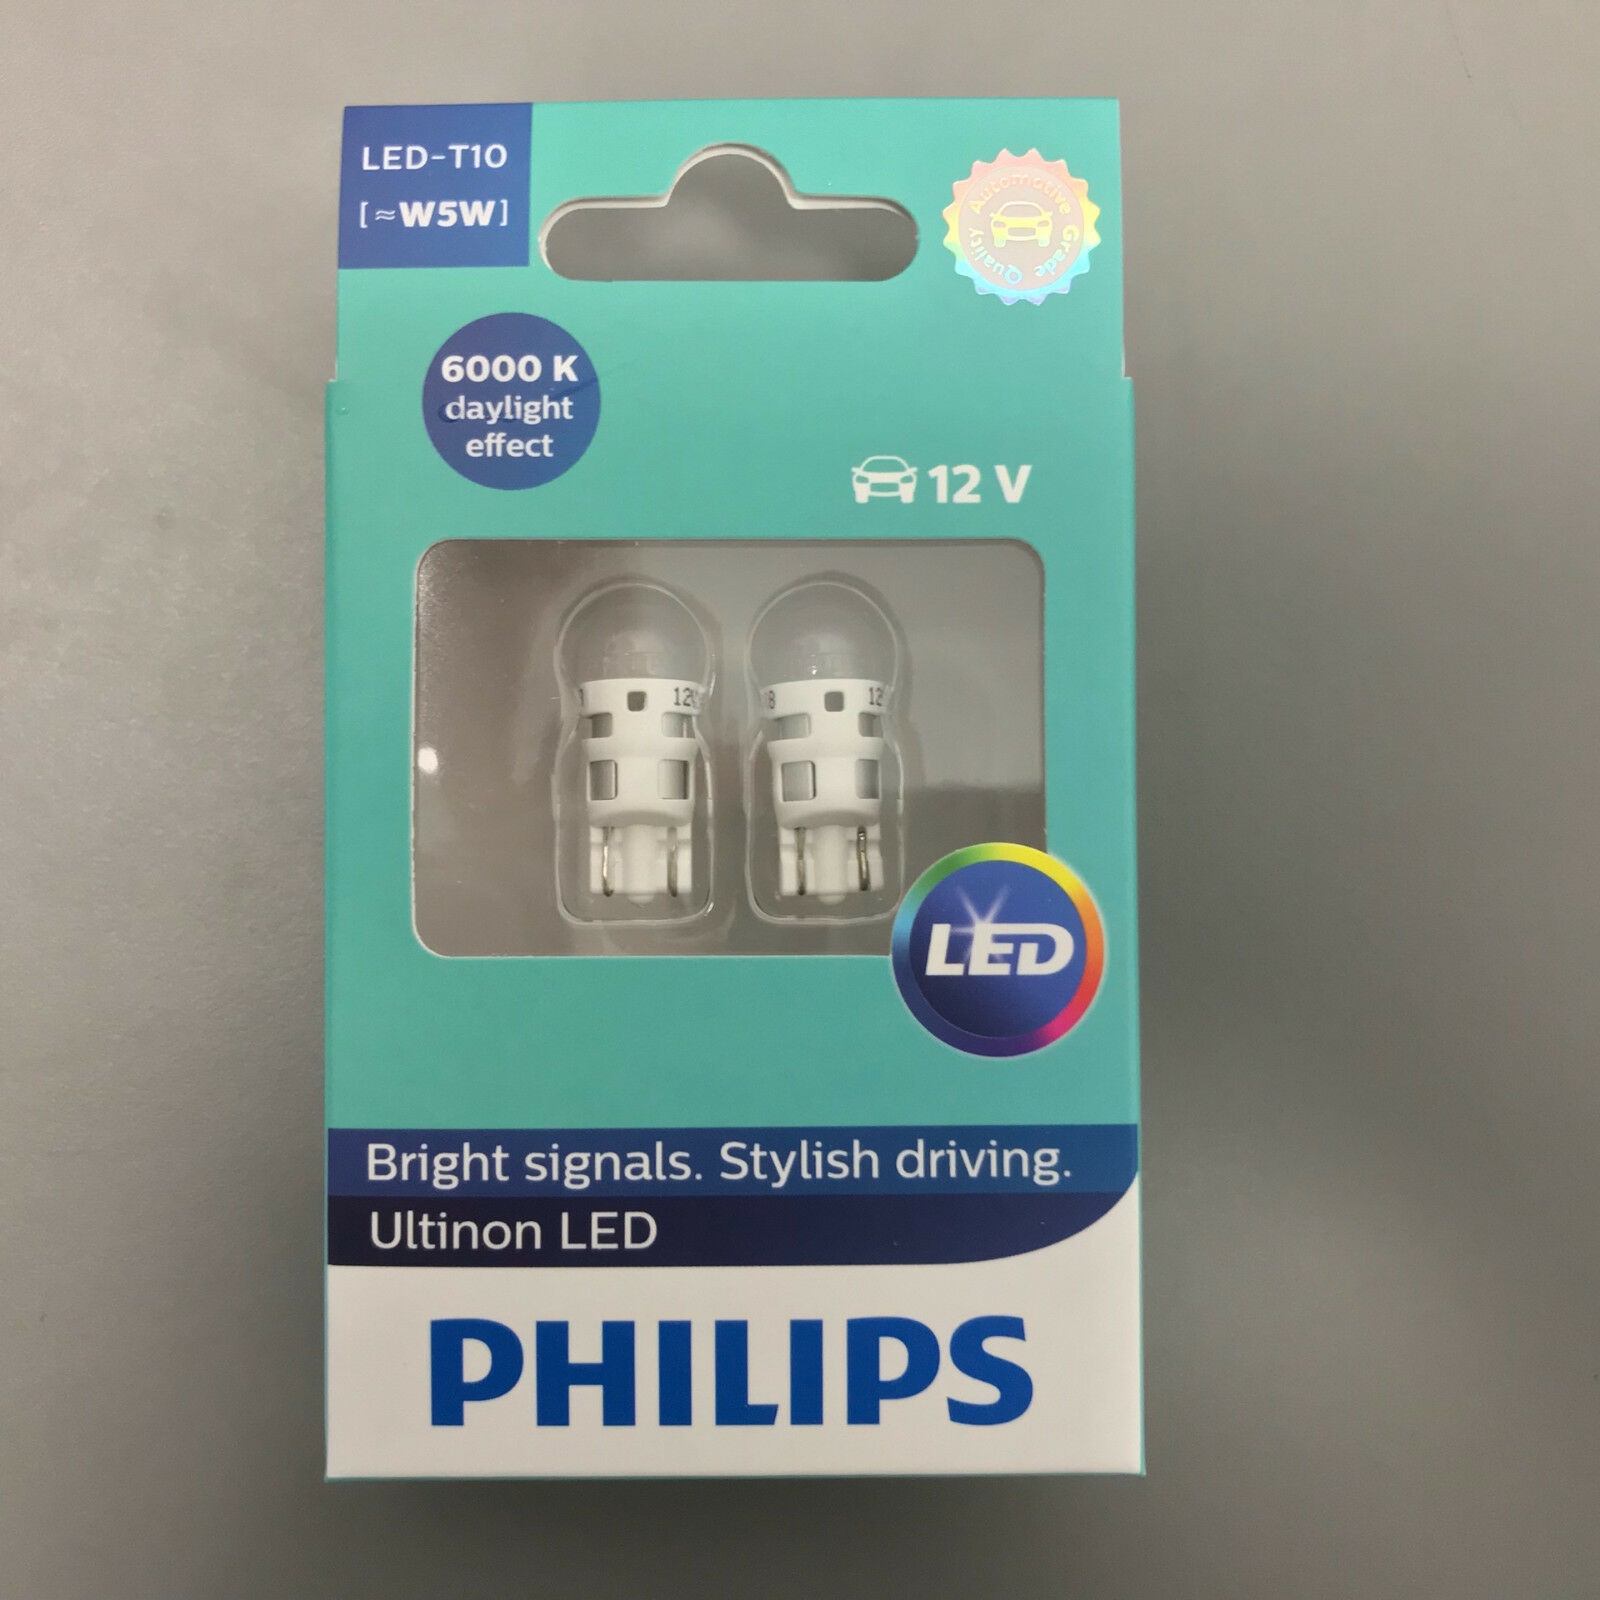 Филипс w5w. Philips led t10 w5w 6000k. Лампа t10 (w5w) 12v/5w Philips. Лампа светодиодная Philips led w5w 12v-1w w2,1x9,5d 6000k. Лампочки Philips w5w 6000k.